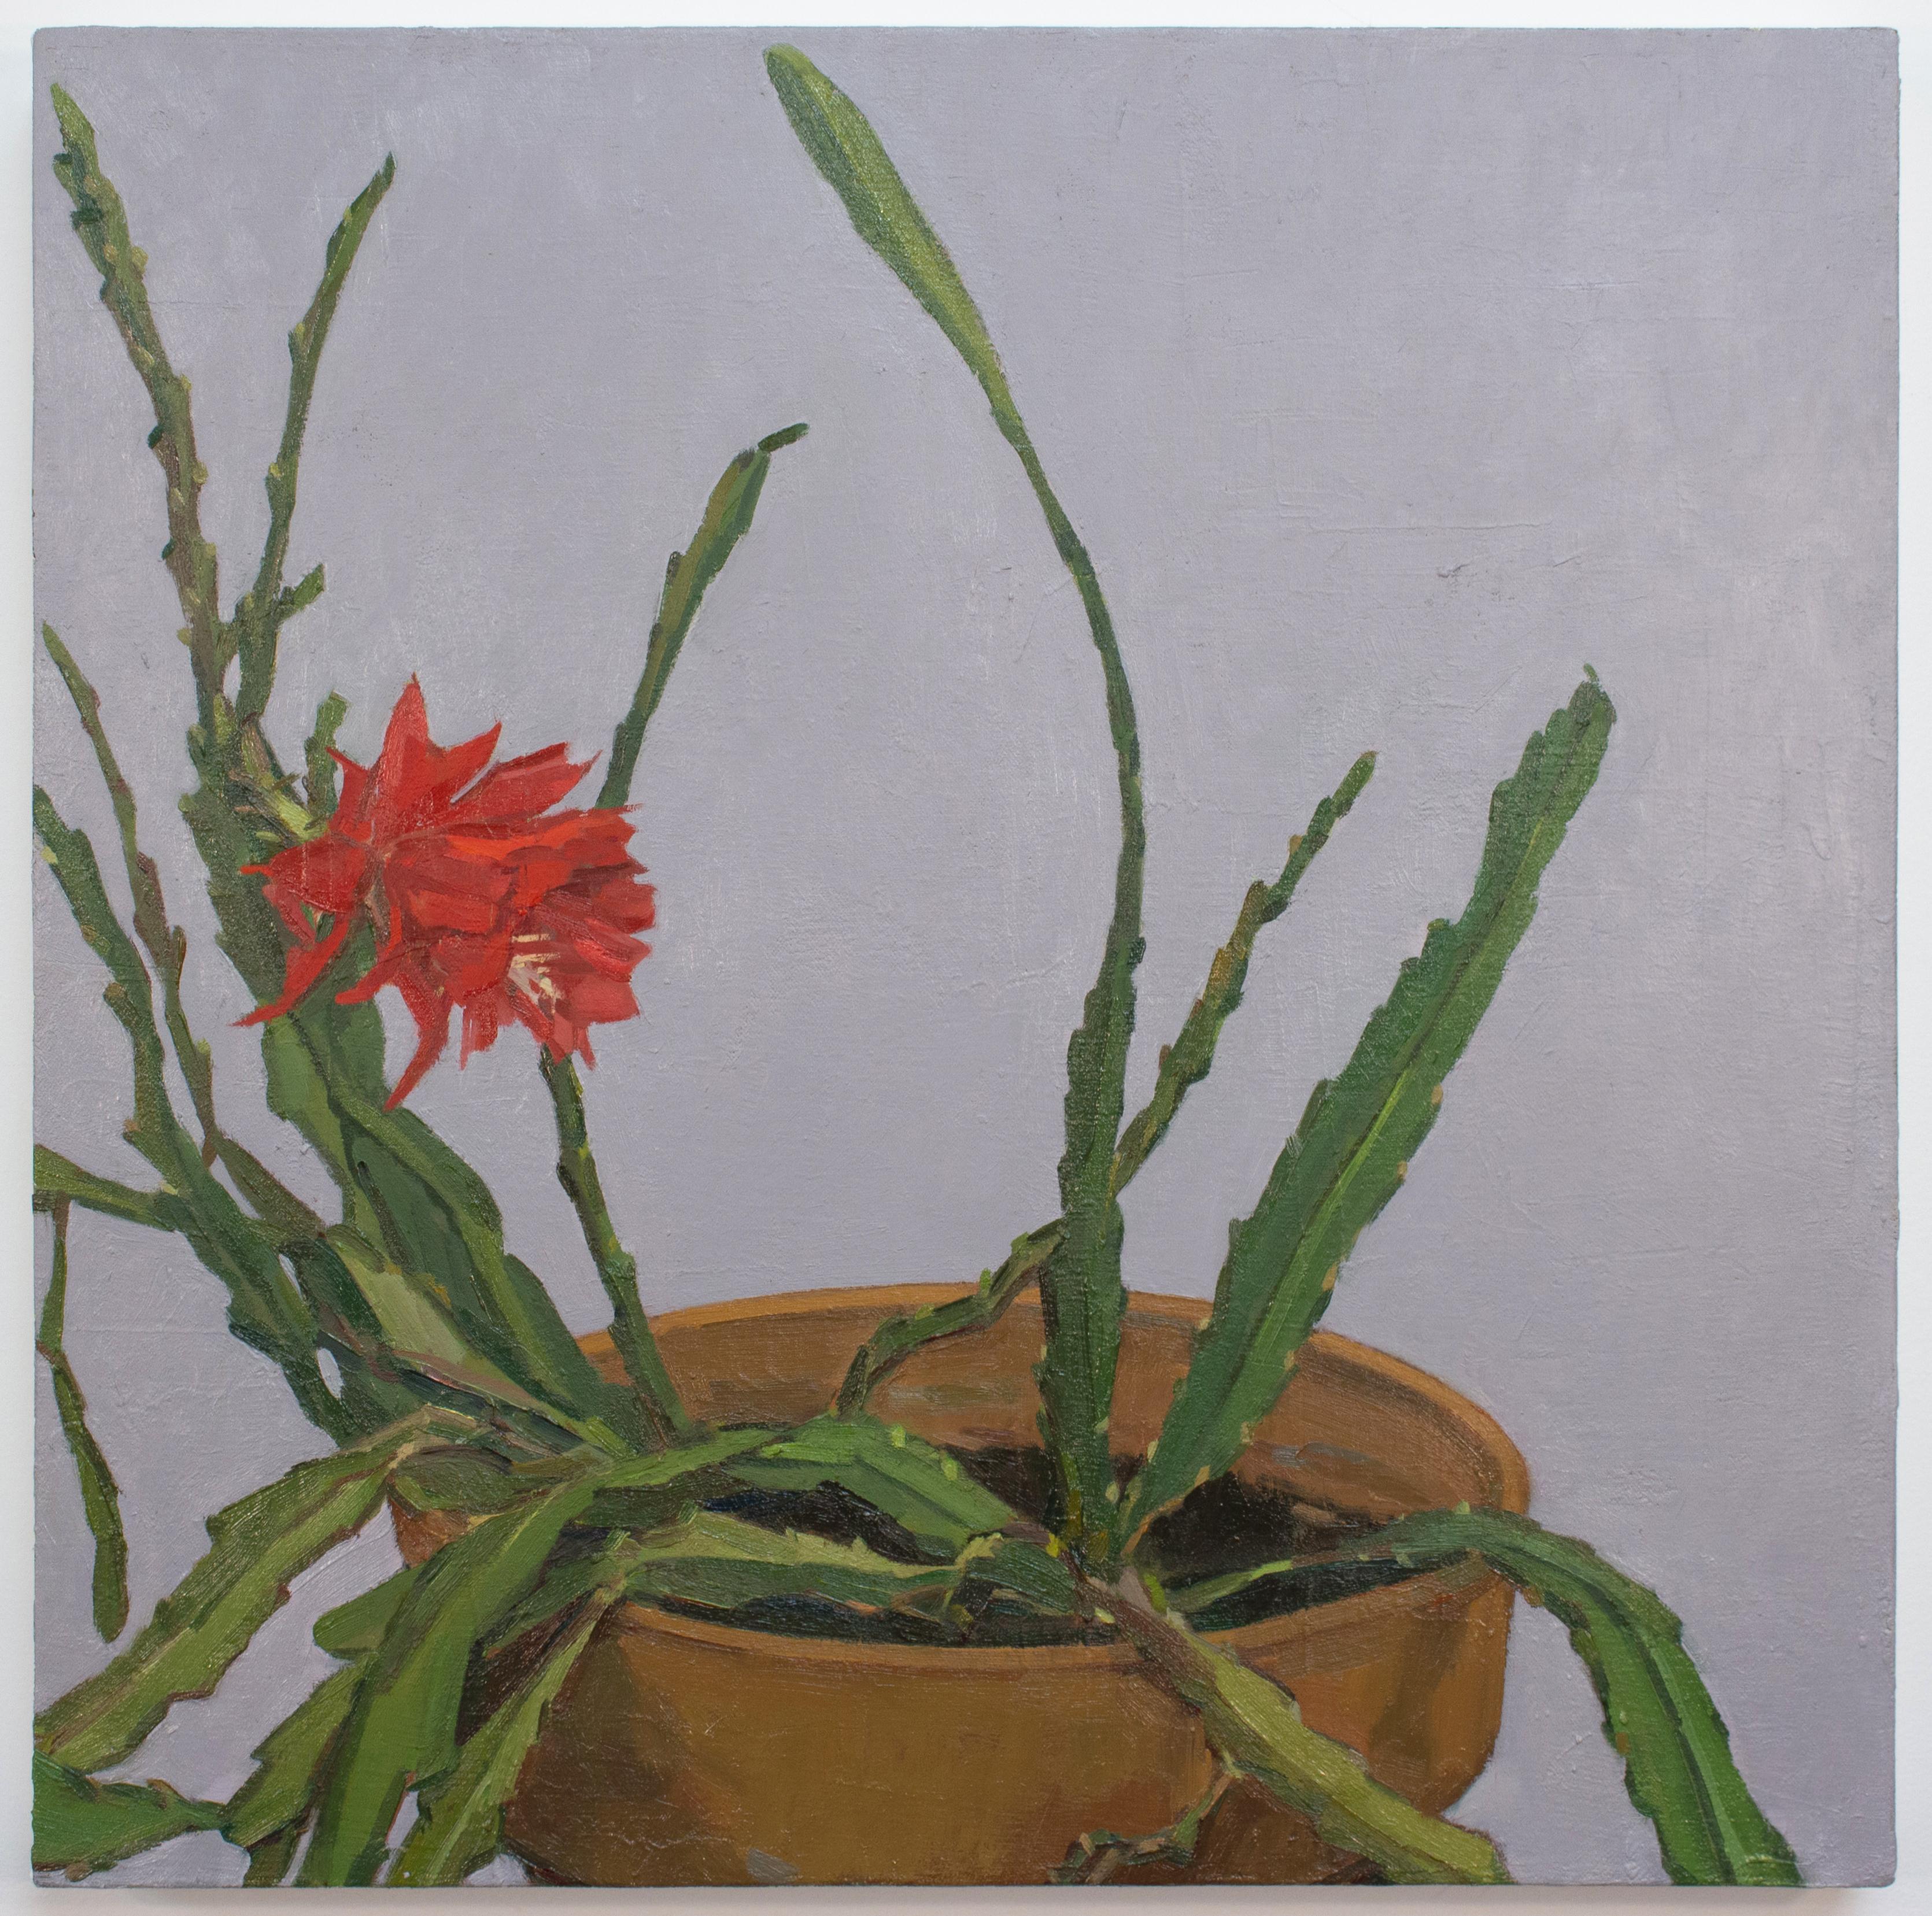 Dieses Gemälde ist in Grün-, Rot-, Orange- und Grautönen gehalten.

Die in Chattanooga lebende Künstlerin Christina Renfer Vogel zeigt mit 